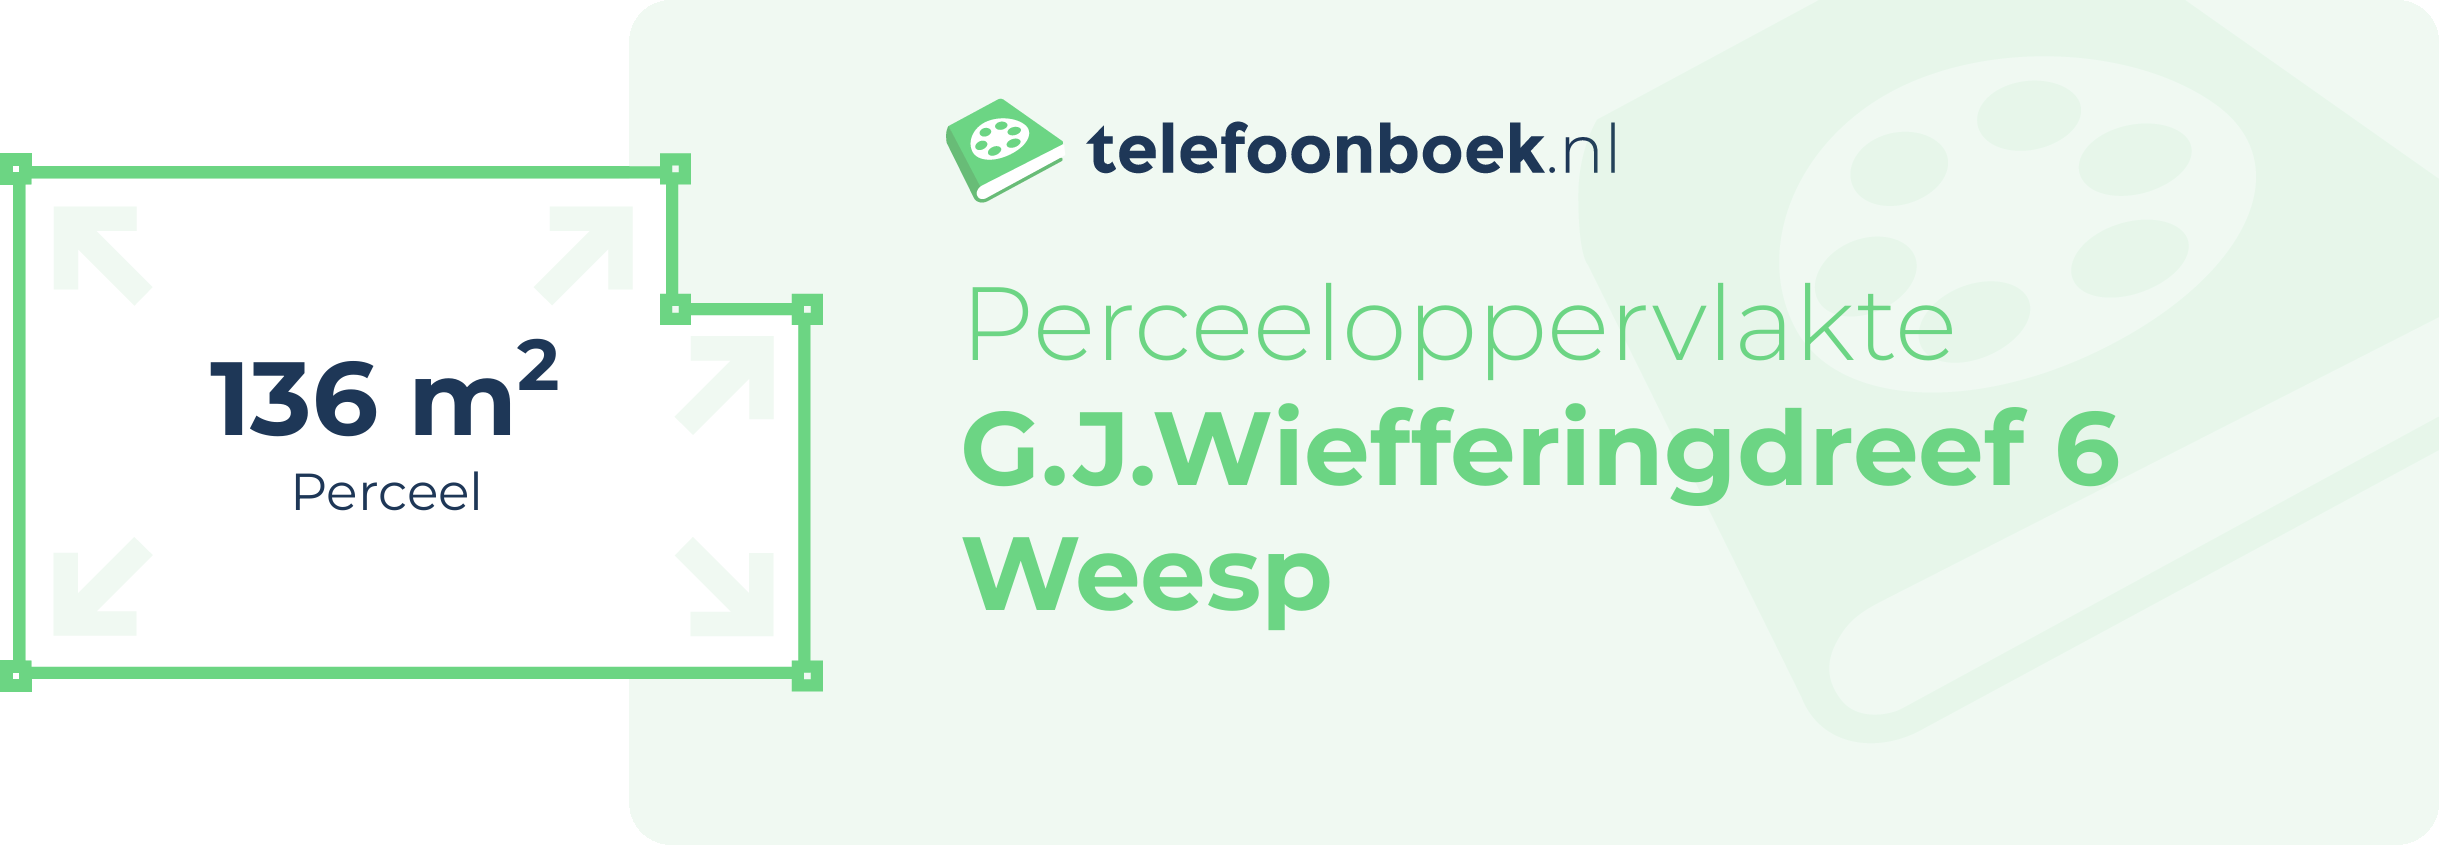 Perceeloppervlakte G.J.Wiefferingdreef 6 Weesp